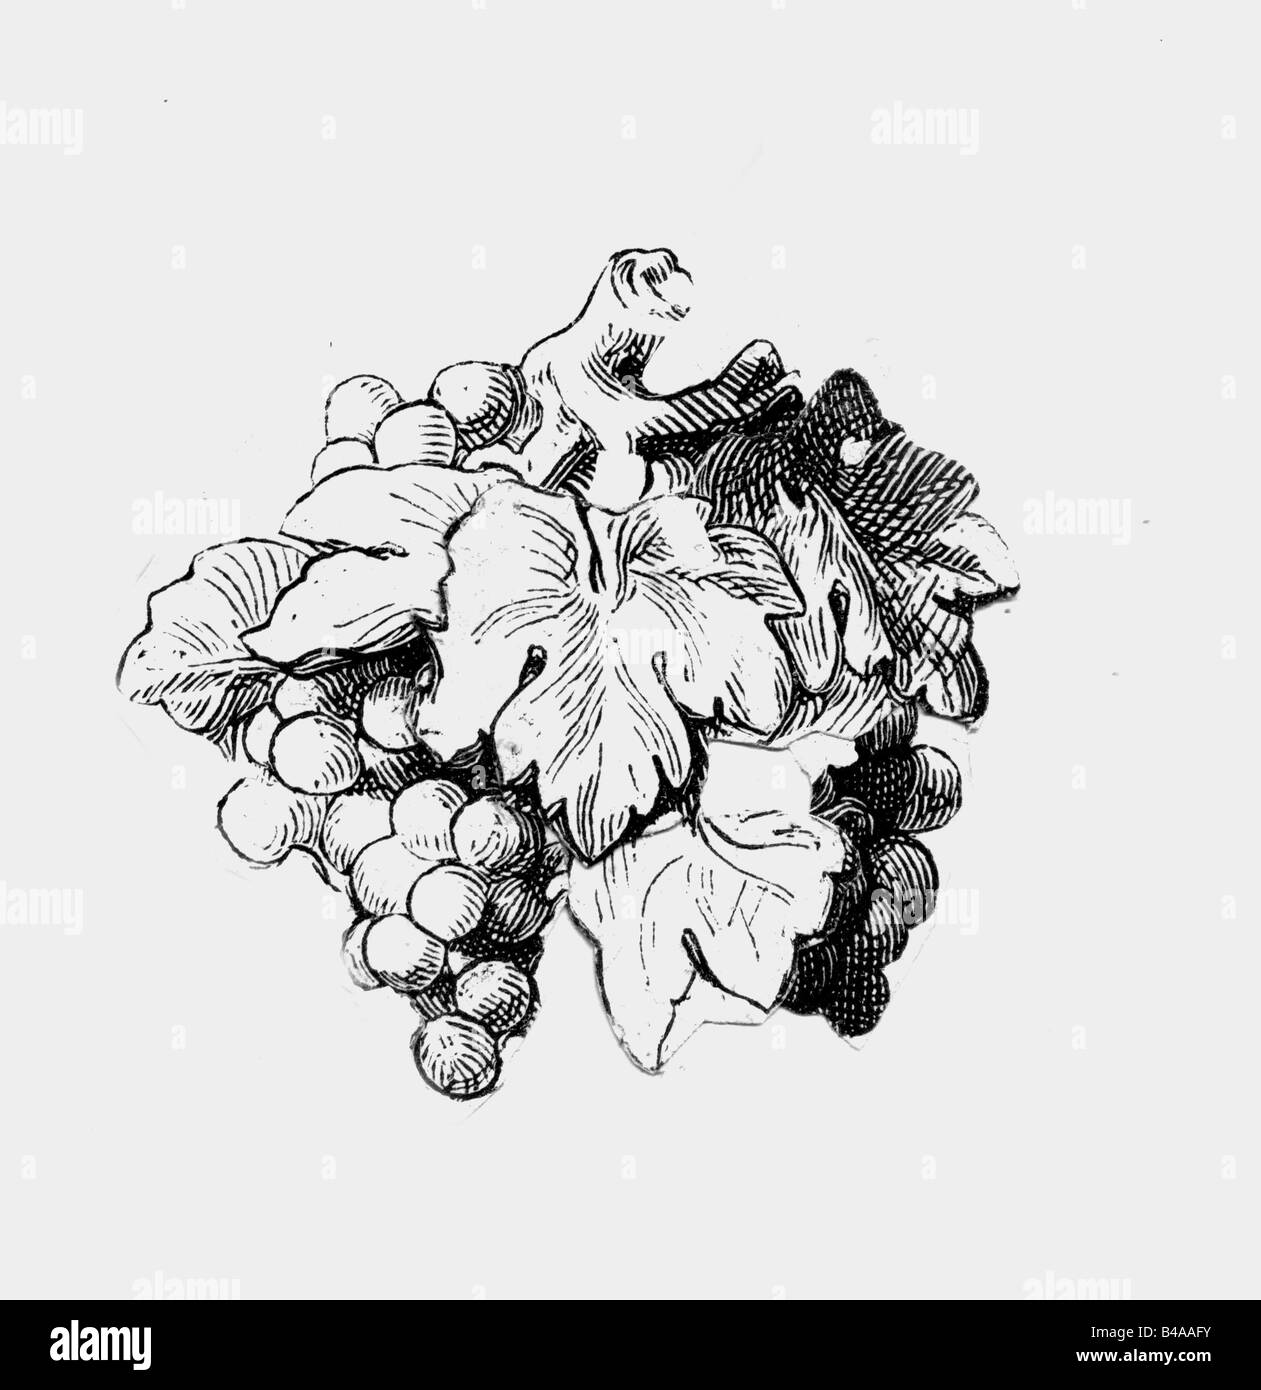 Botanica, vinn d'uva (Vitis vinifera), uva e foglie, disegno d'inchiostro, probabilmente 20th secolo, vino, foglie, pianta, piante, Germania, coni, storico, storico, Foto Stock